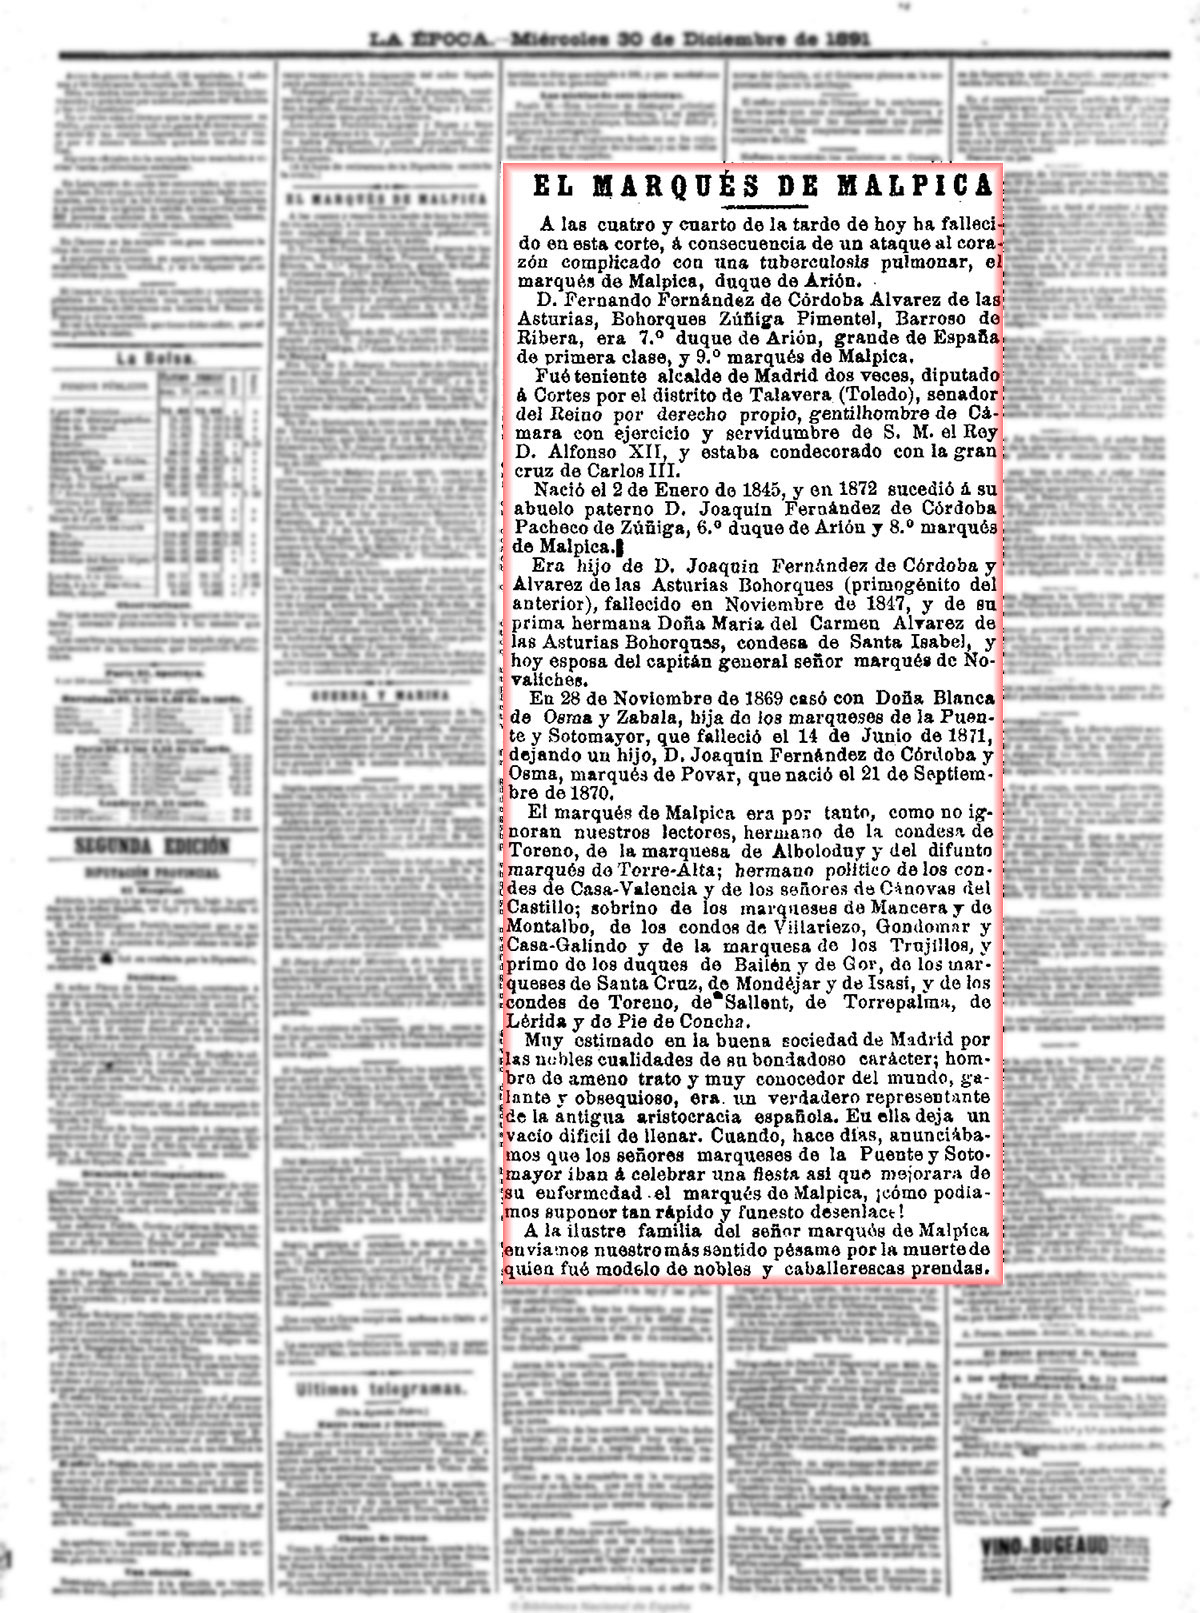 La Época 30/12/1891, n.º 14.126, página 3. Muerte del IX marqués de Malpica